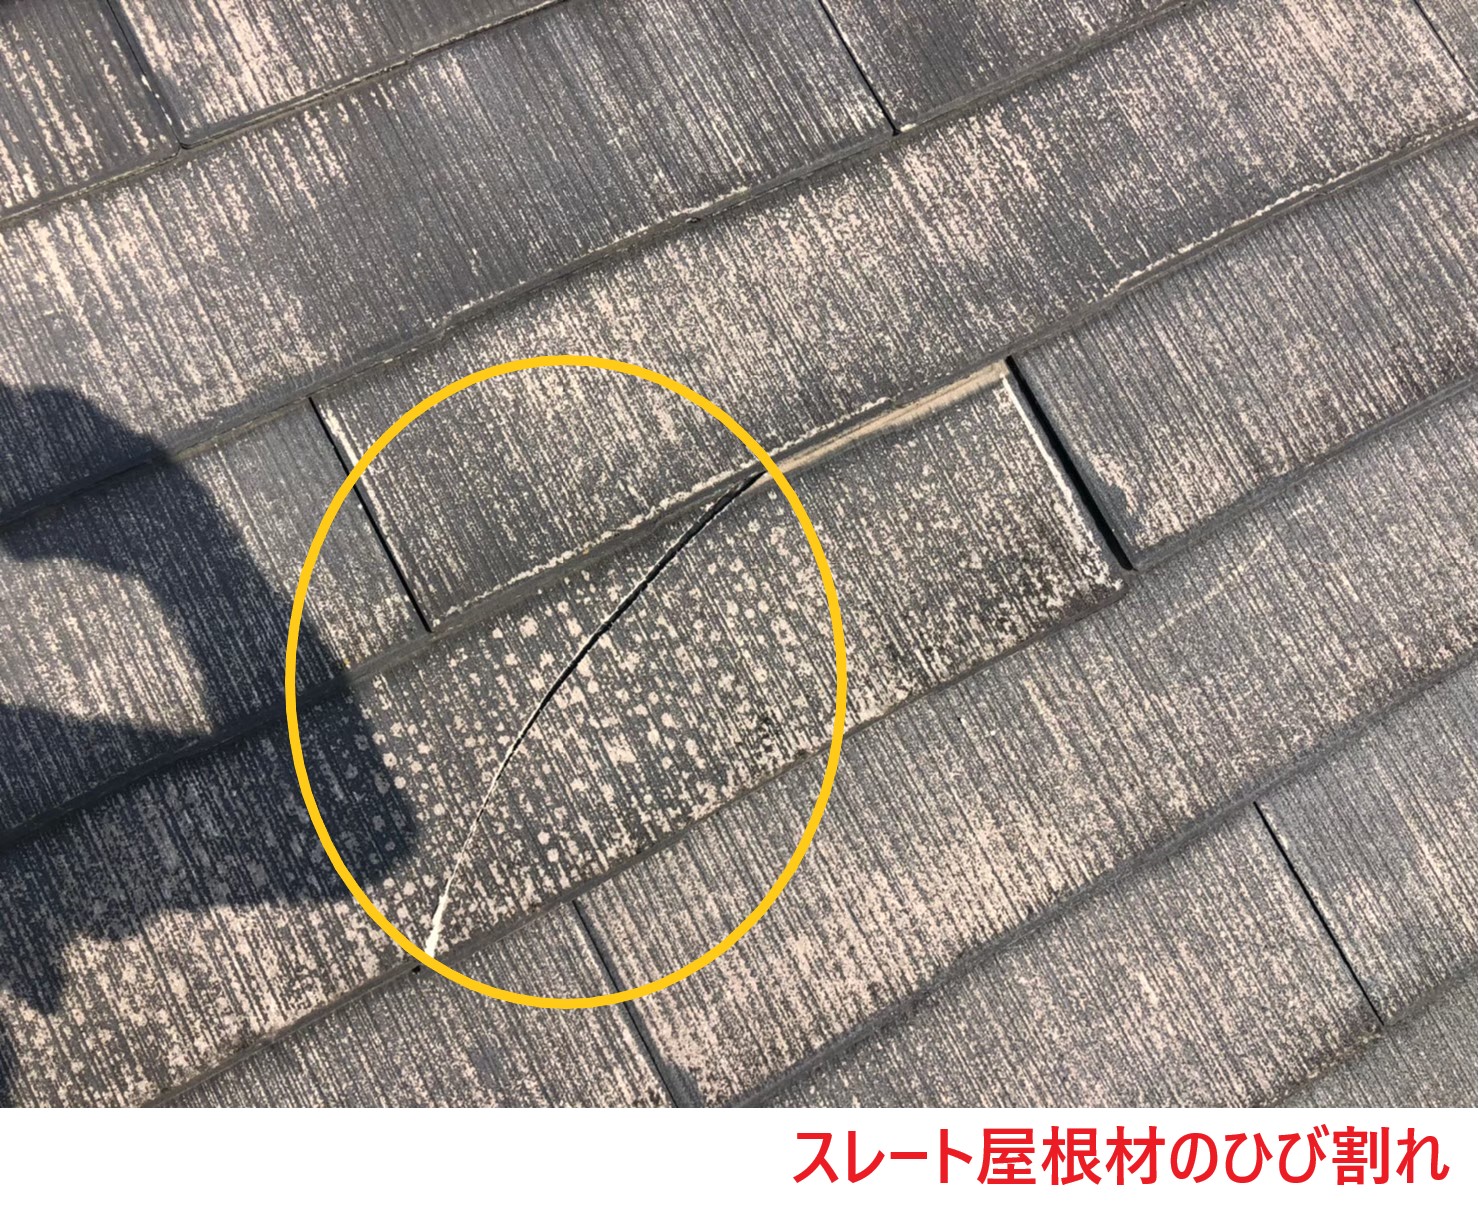 スレート屋根材の割れやズレの発生 (2)